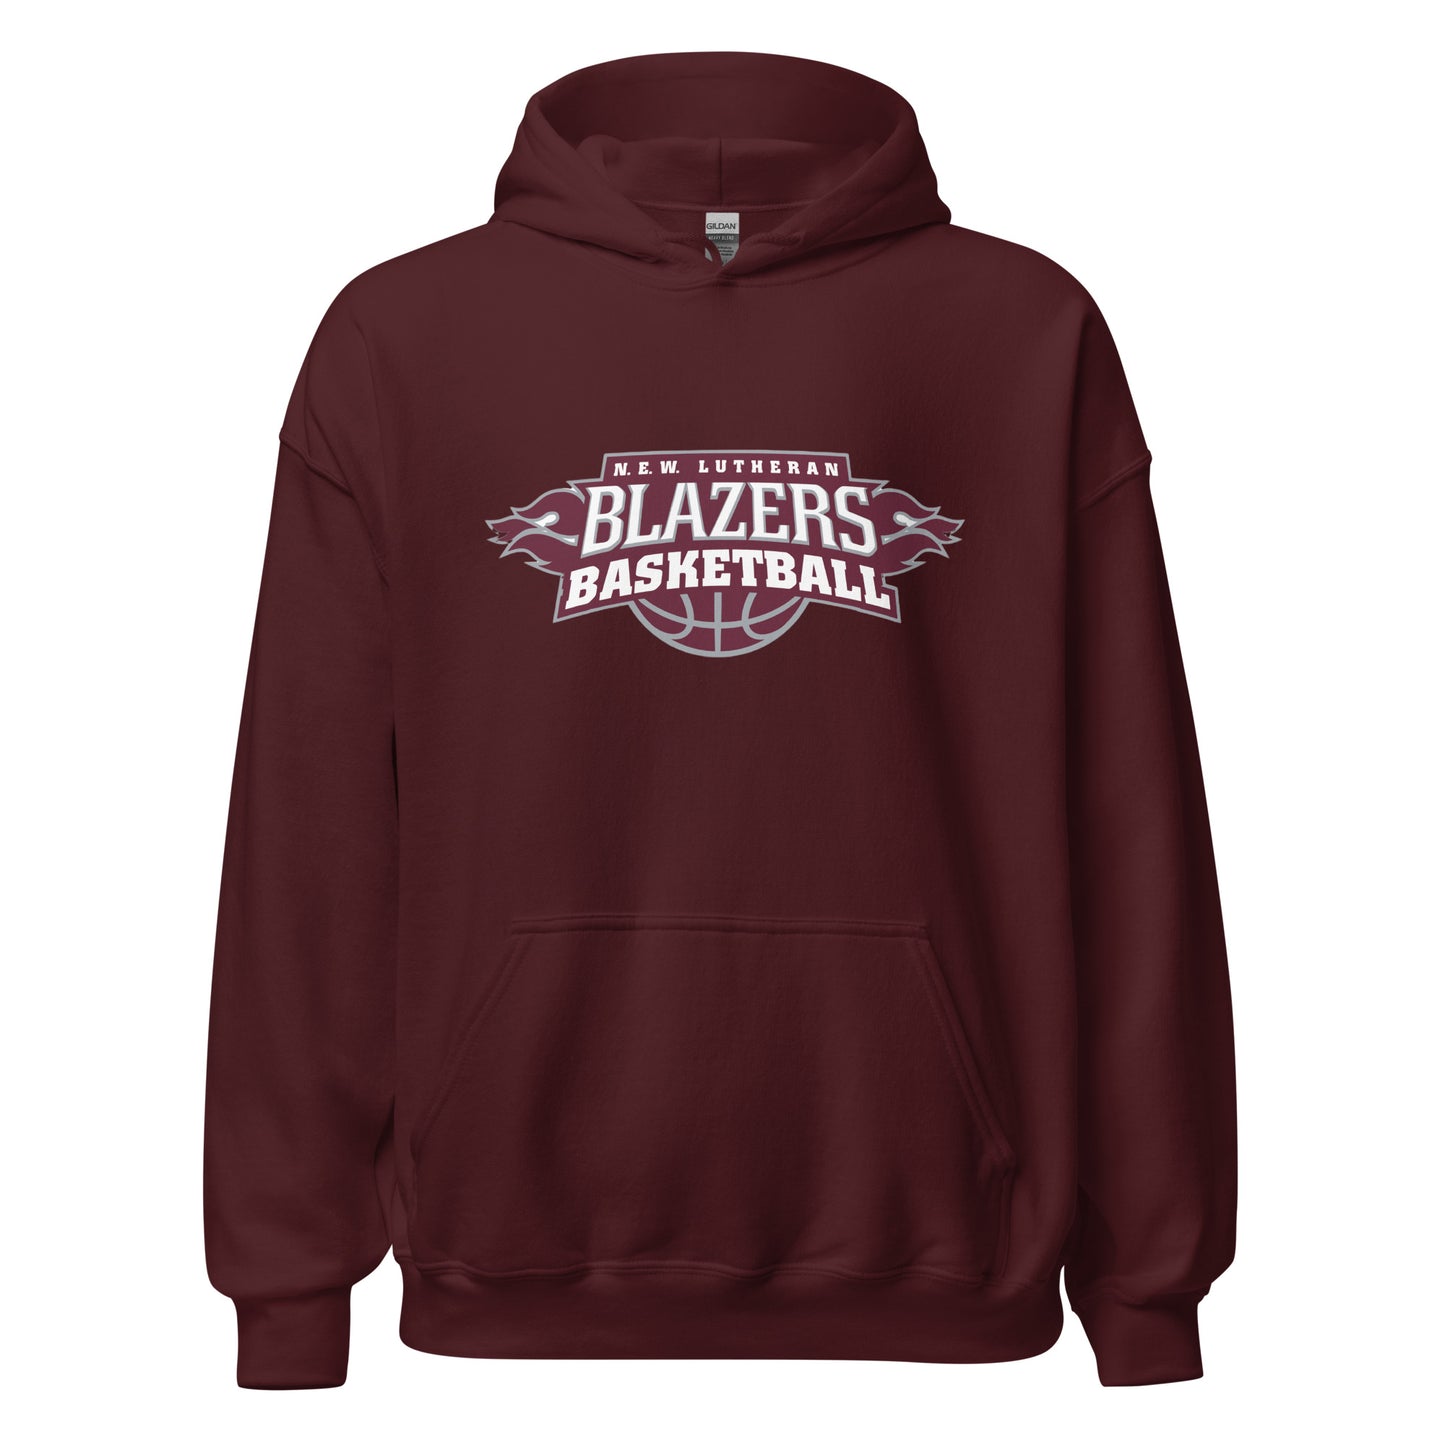 Blazers Basketball Unisex Hoodie (Gildan)